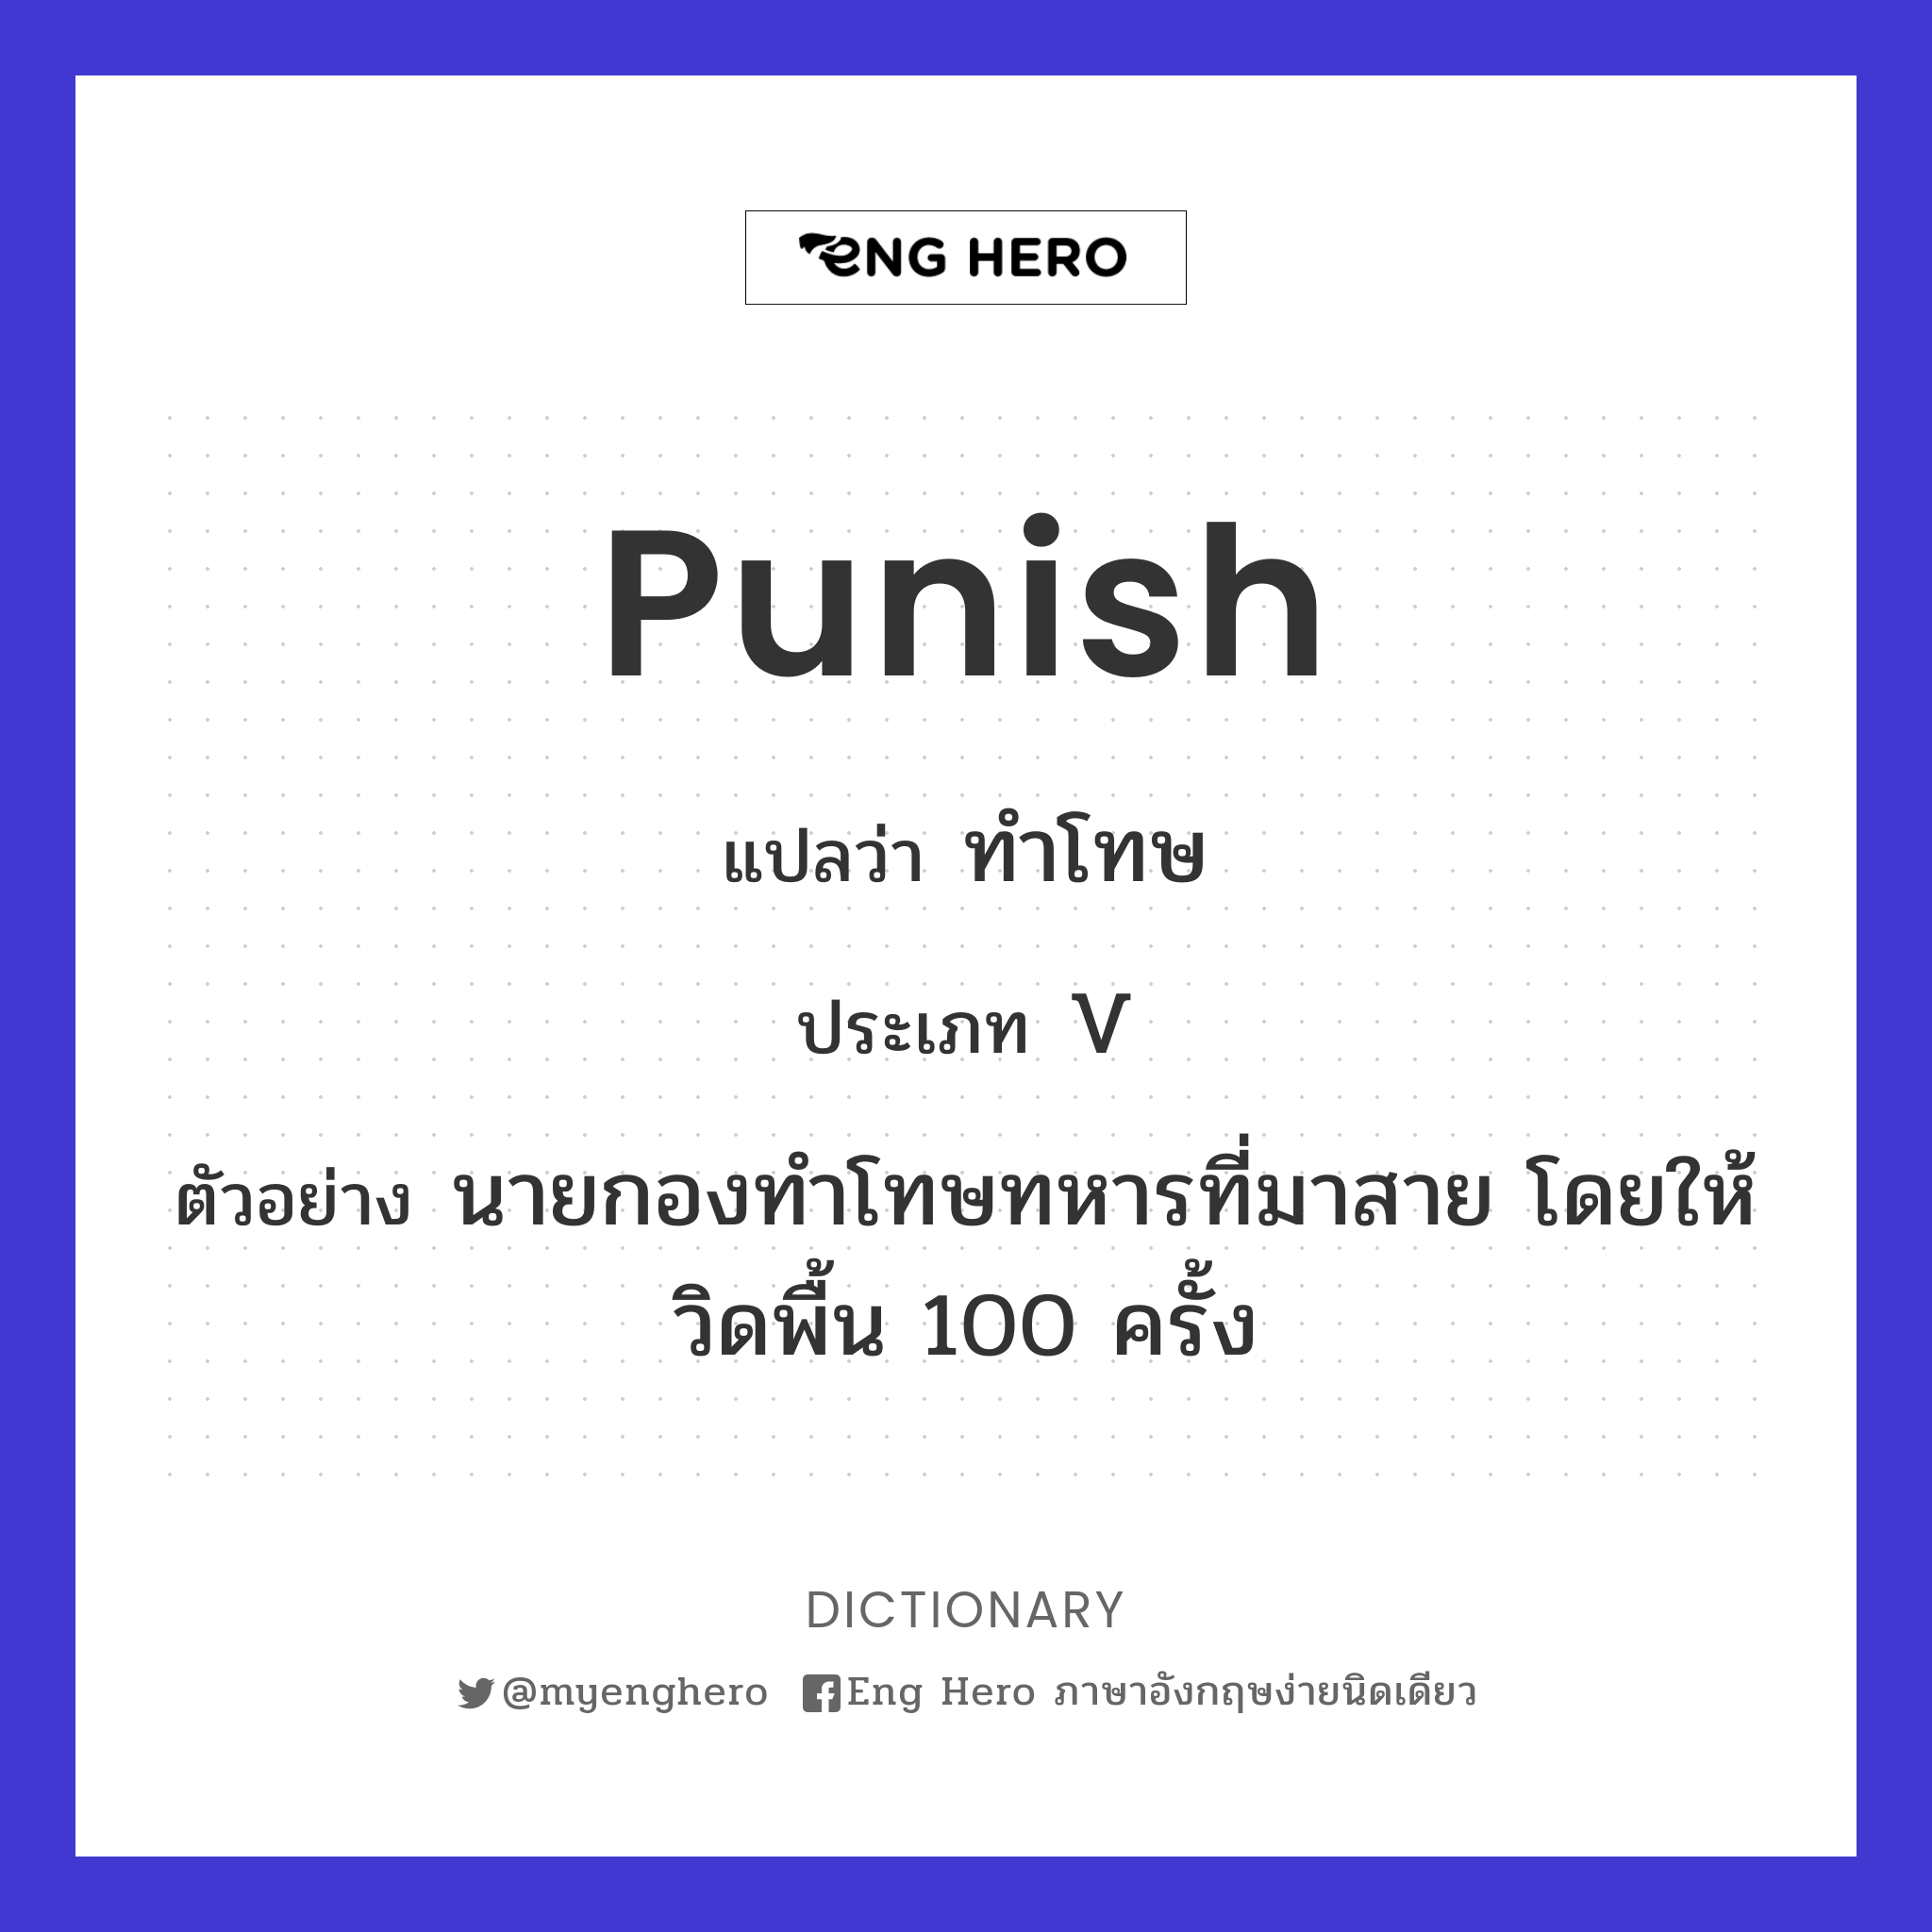 punish